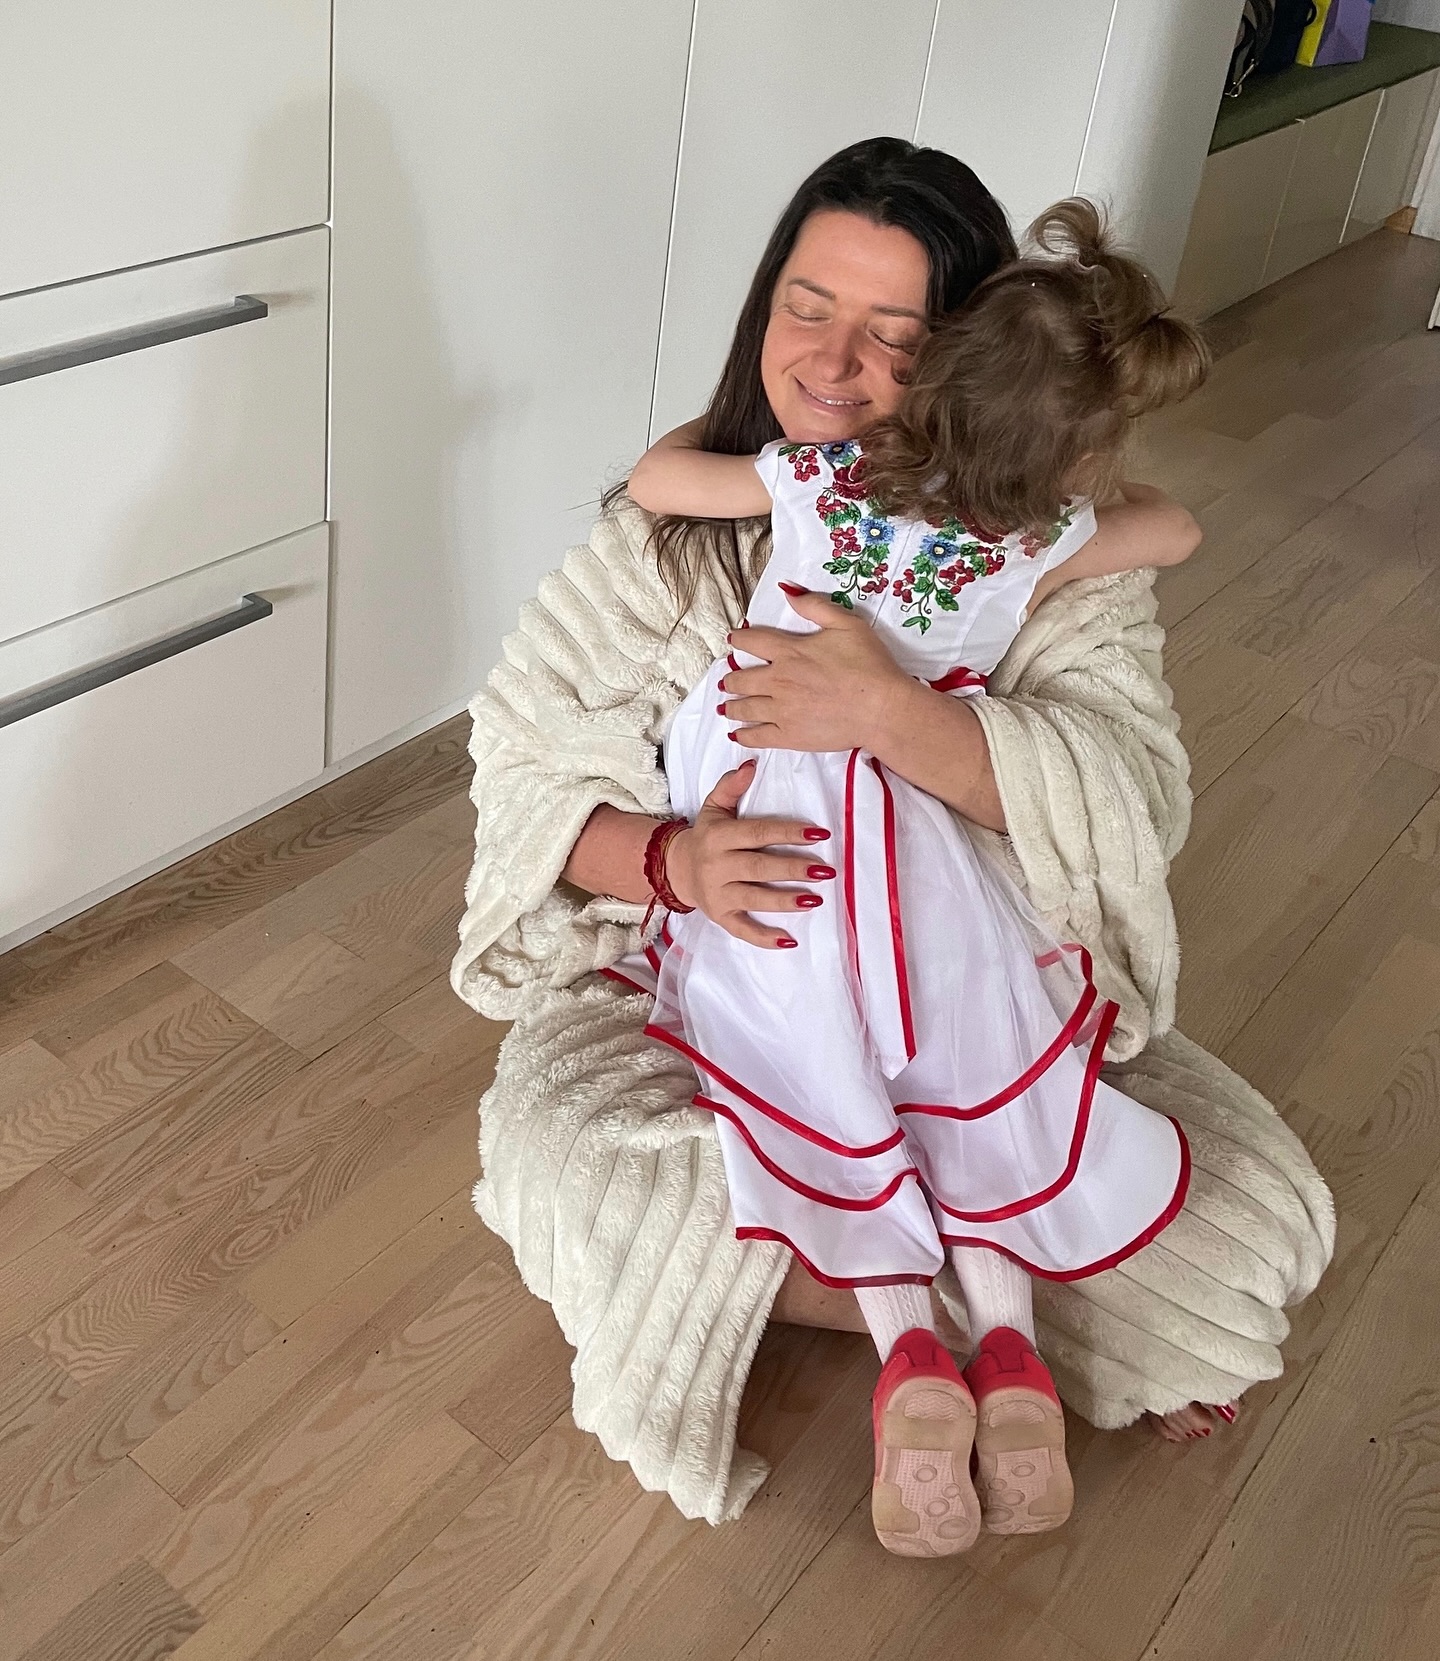 Наталия Могилевская показала подарок, который сделала младшей дочери: семейное видео